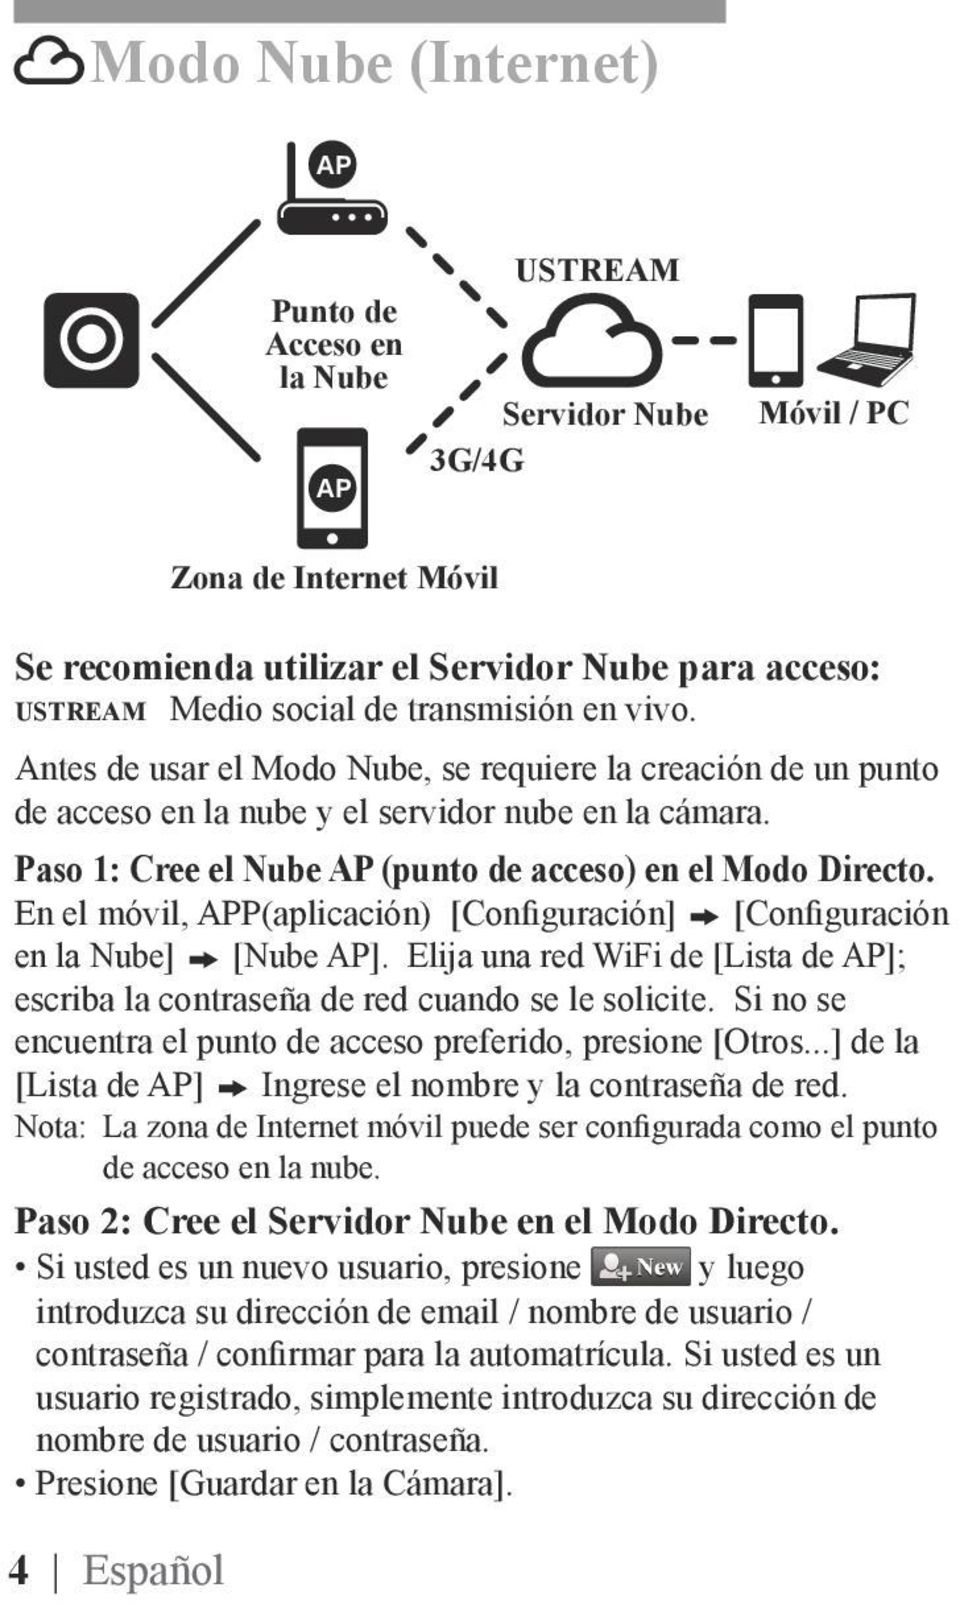 Paso 1: Cree el Nube AP (punto de acceso) en el Modo Directo. En el móvil, APP(aplicación) [Configuración] [Configuración en la Nube] [Nube AP].